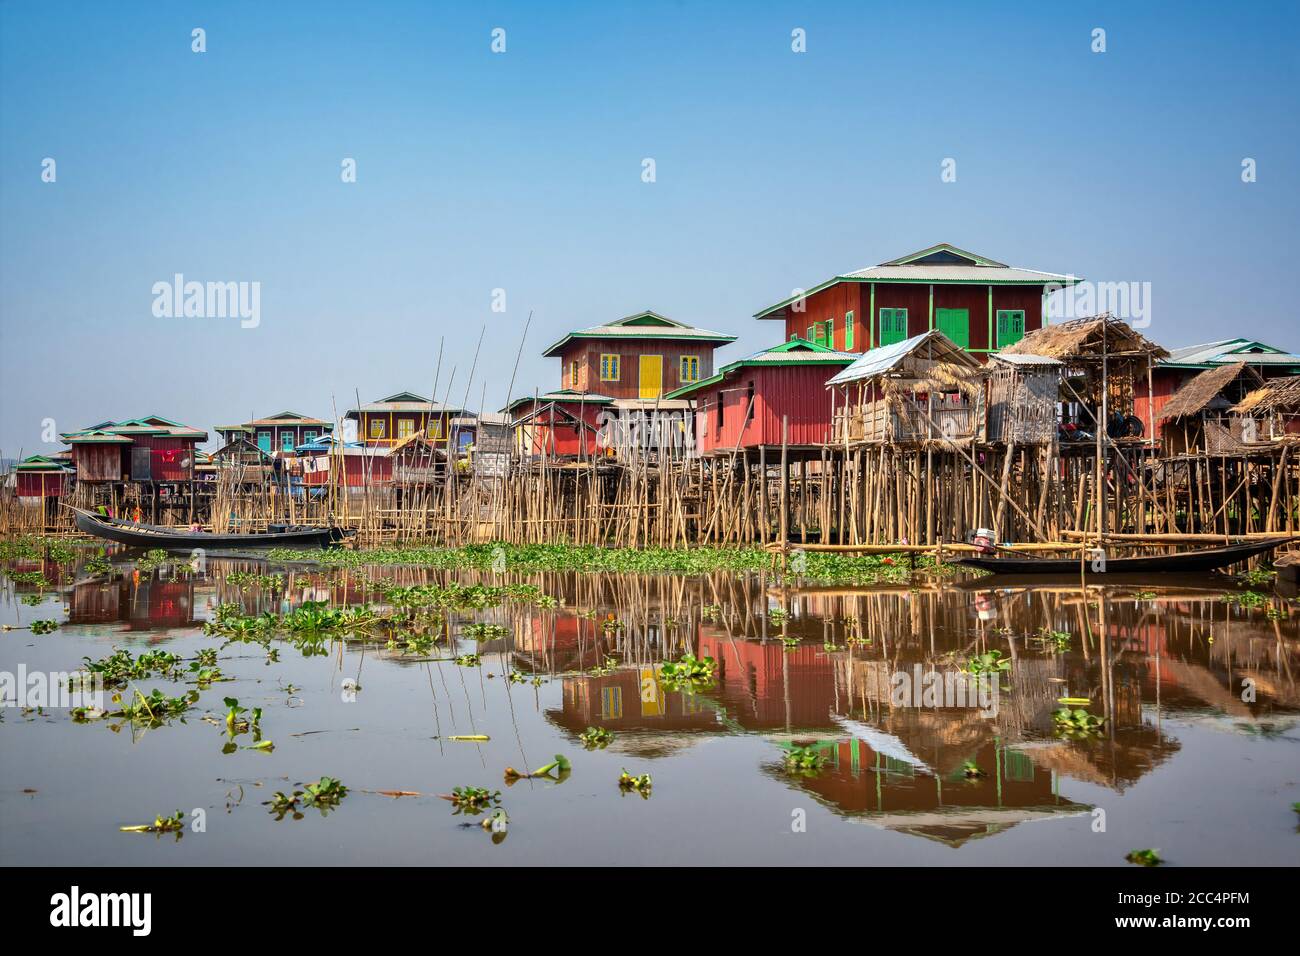 Villaggio galleggiante colorato con case di palafitte sul lago Inle in Birmania, Myanmar Foto Stock